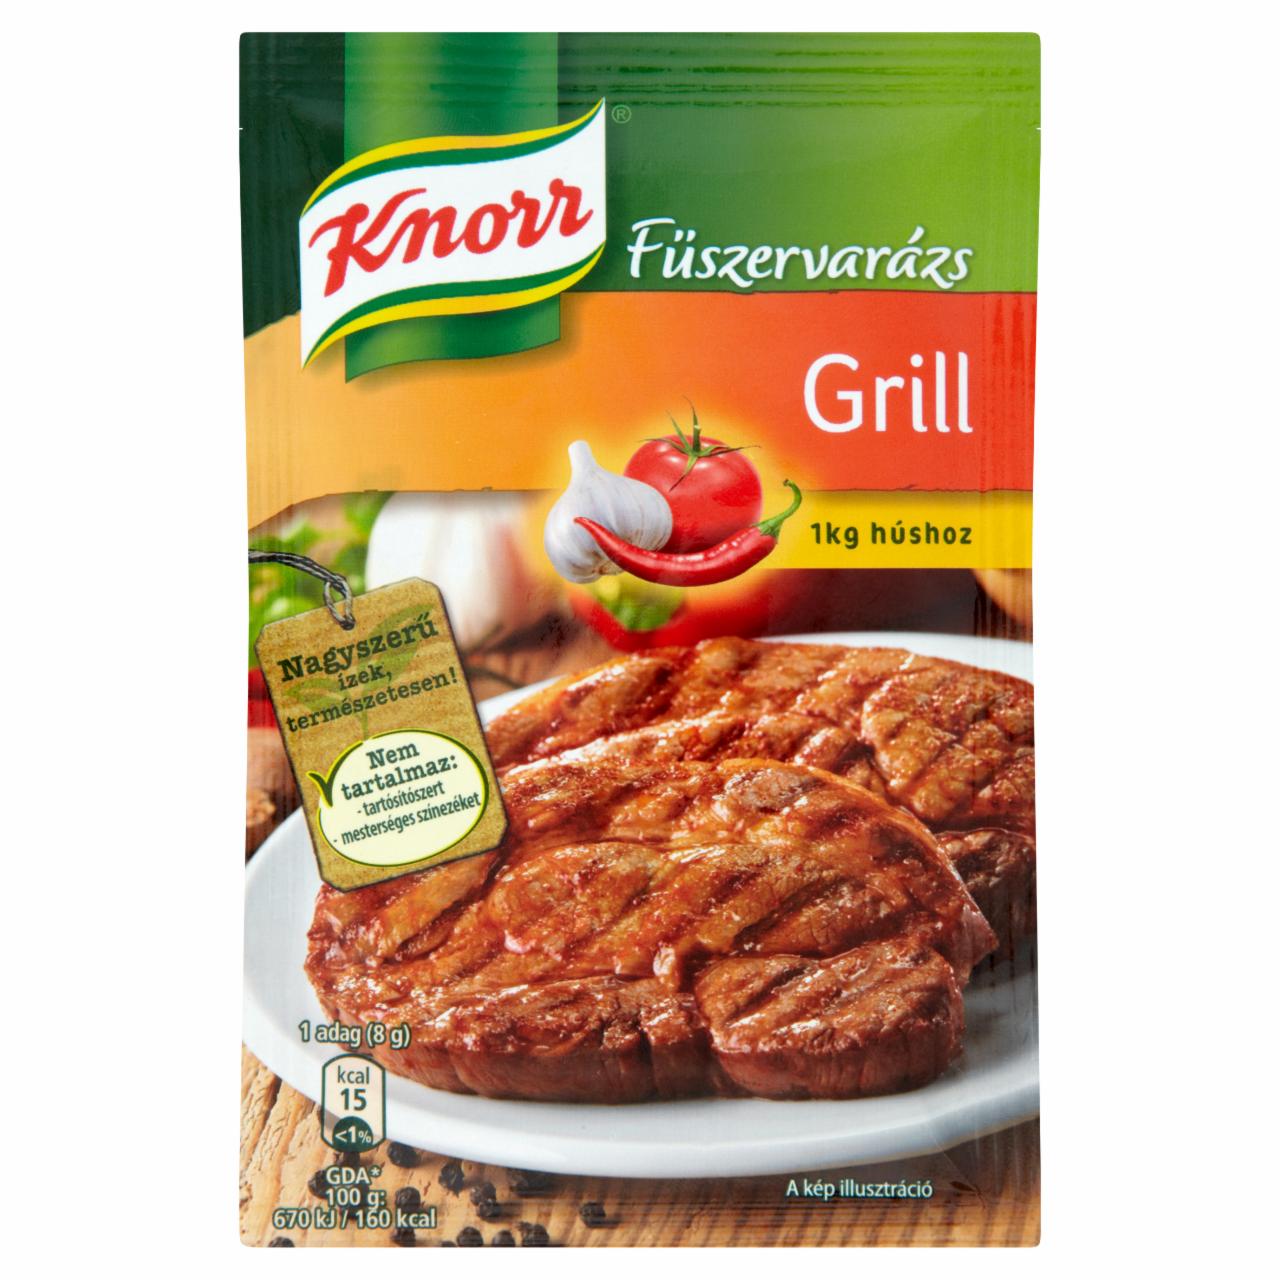 Képek - Knorr Fűszervarázs grill fűszerkeverék 40 g